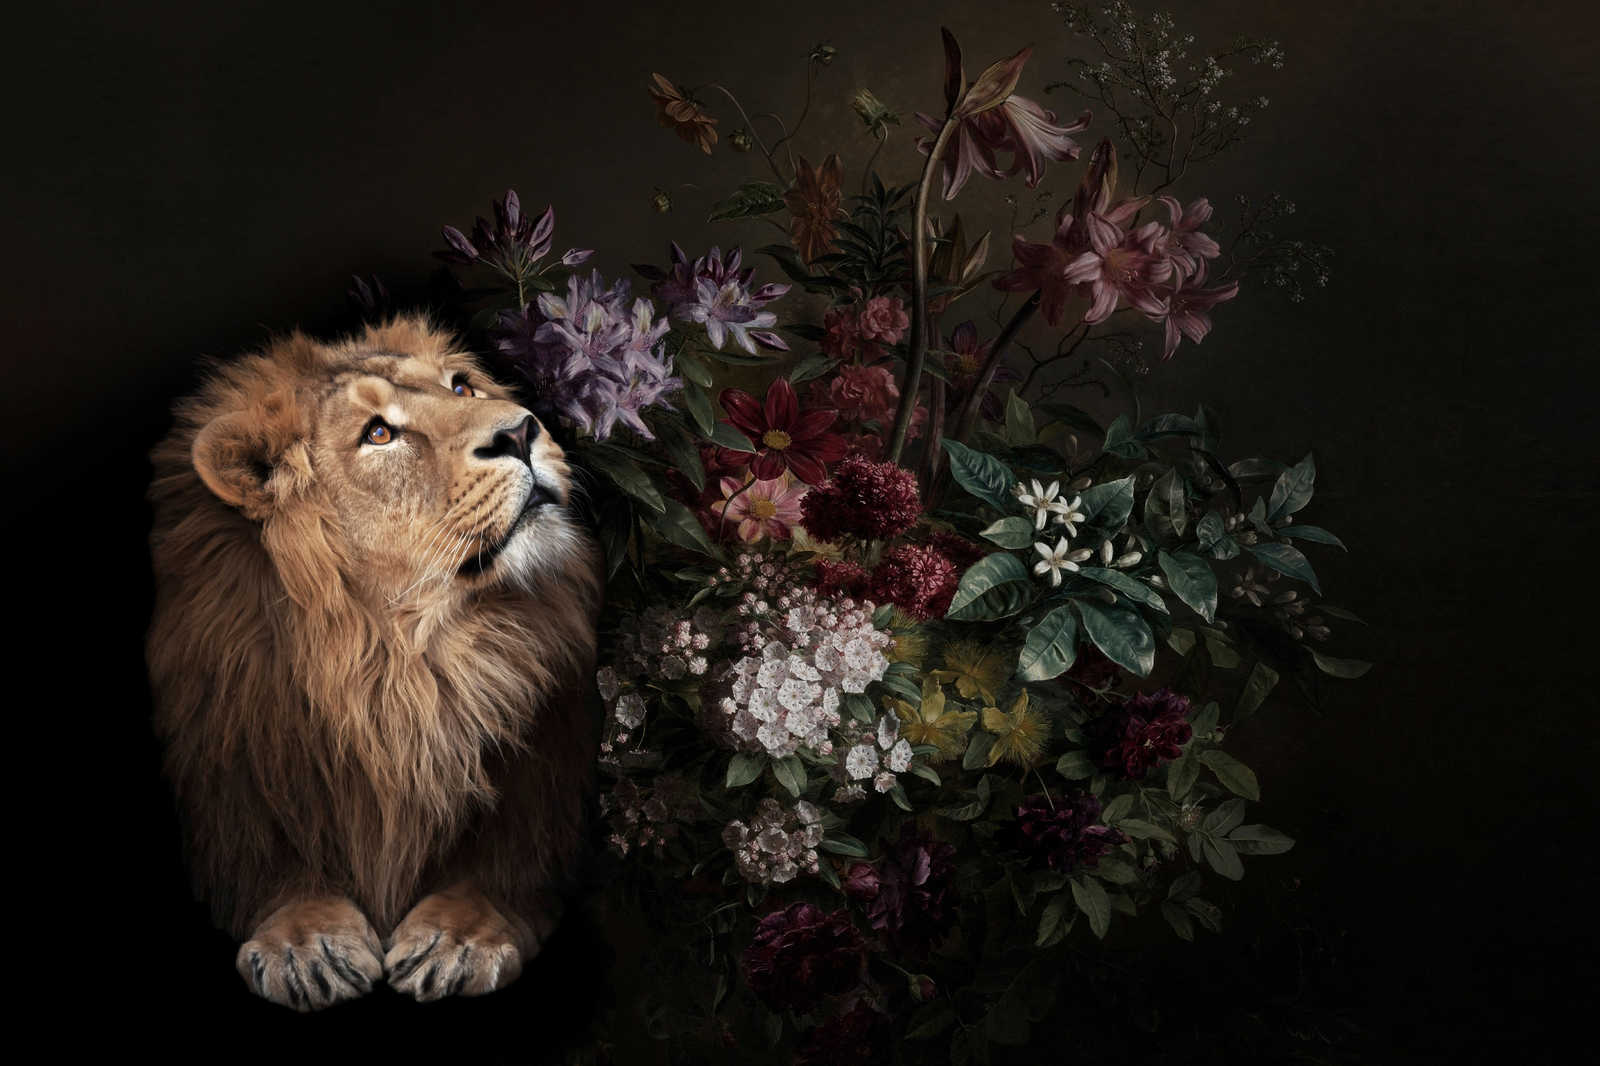             Canvas painting Lion Portrait with Flowers - 0,90 m x 0,60 m
        